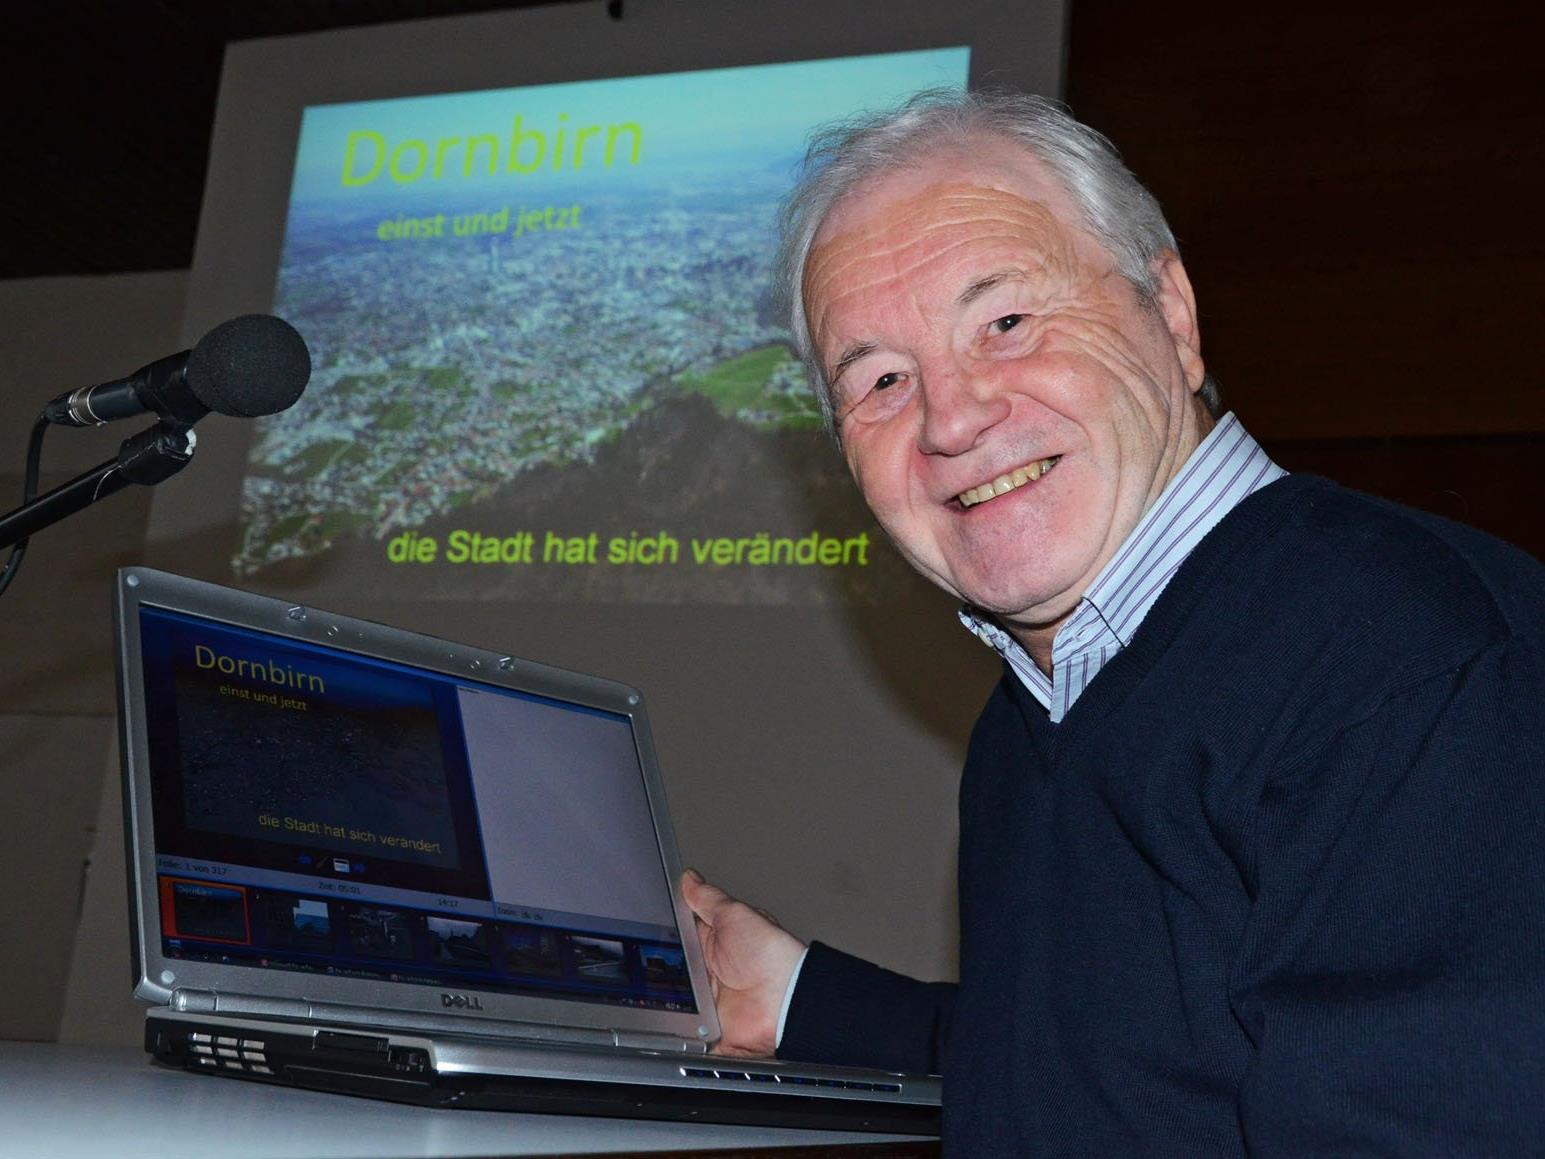 Der Vortrag von Manfred Dünser stieß im Seniorenbund auf großes Interesse